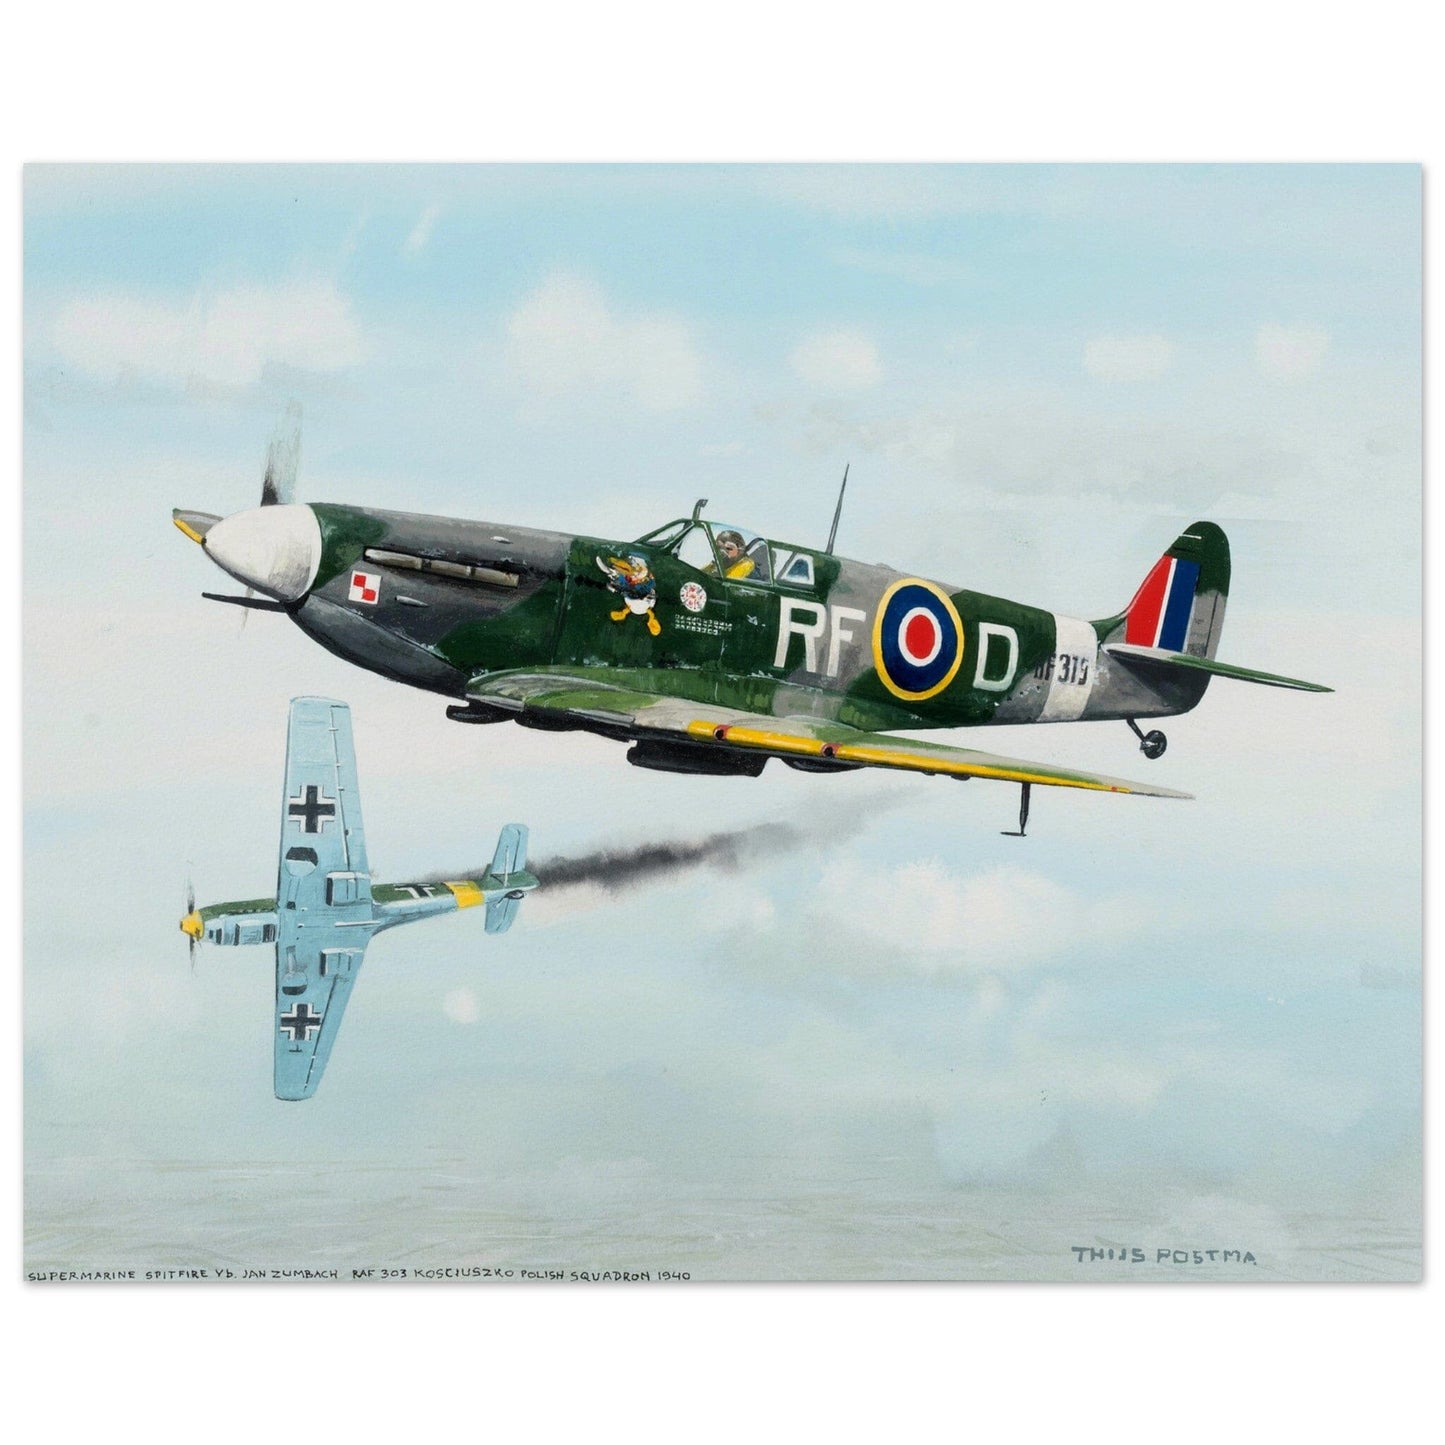 Thijs Postma - Poster - Supermarine Spitfire Vb versus Messerschmitt Bf 109E Poster Only TP Aviation Art 40x50 cm / 16x20″ 